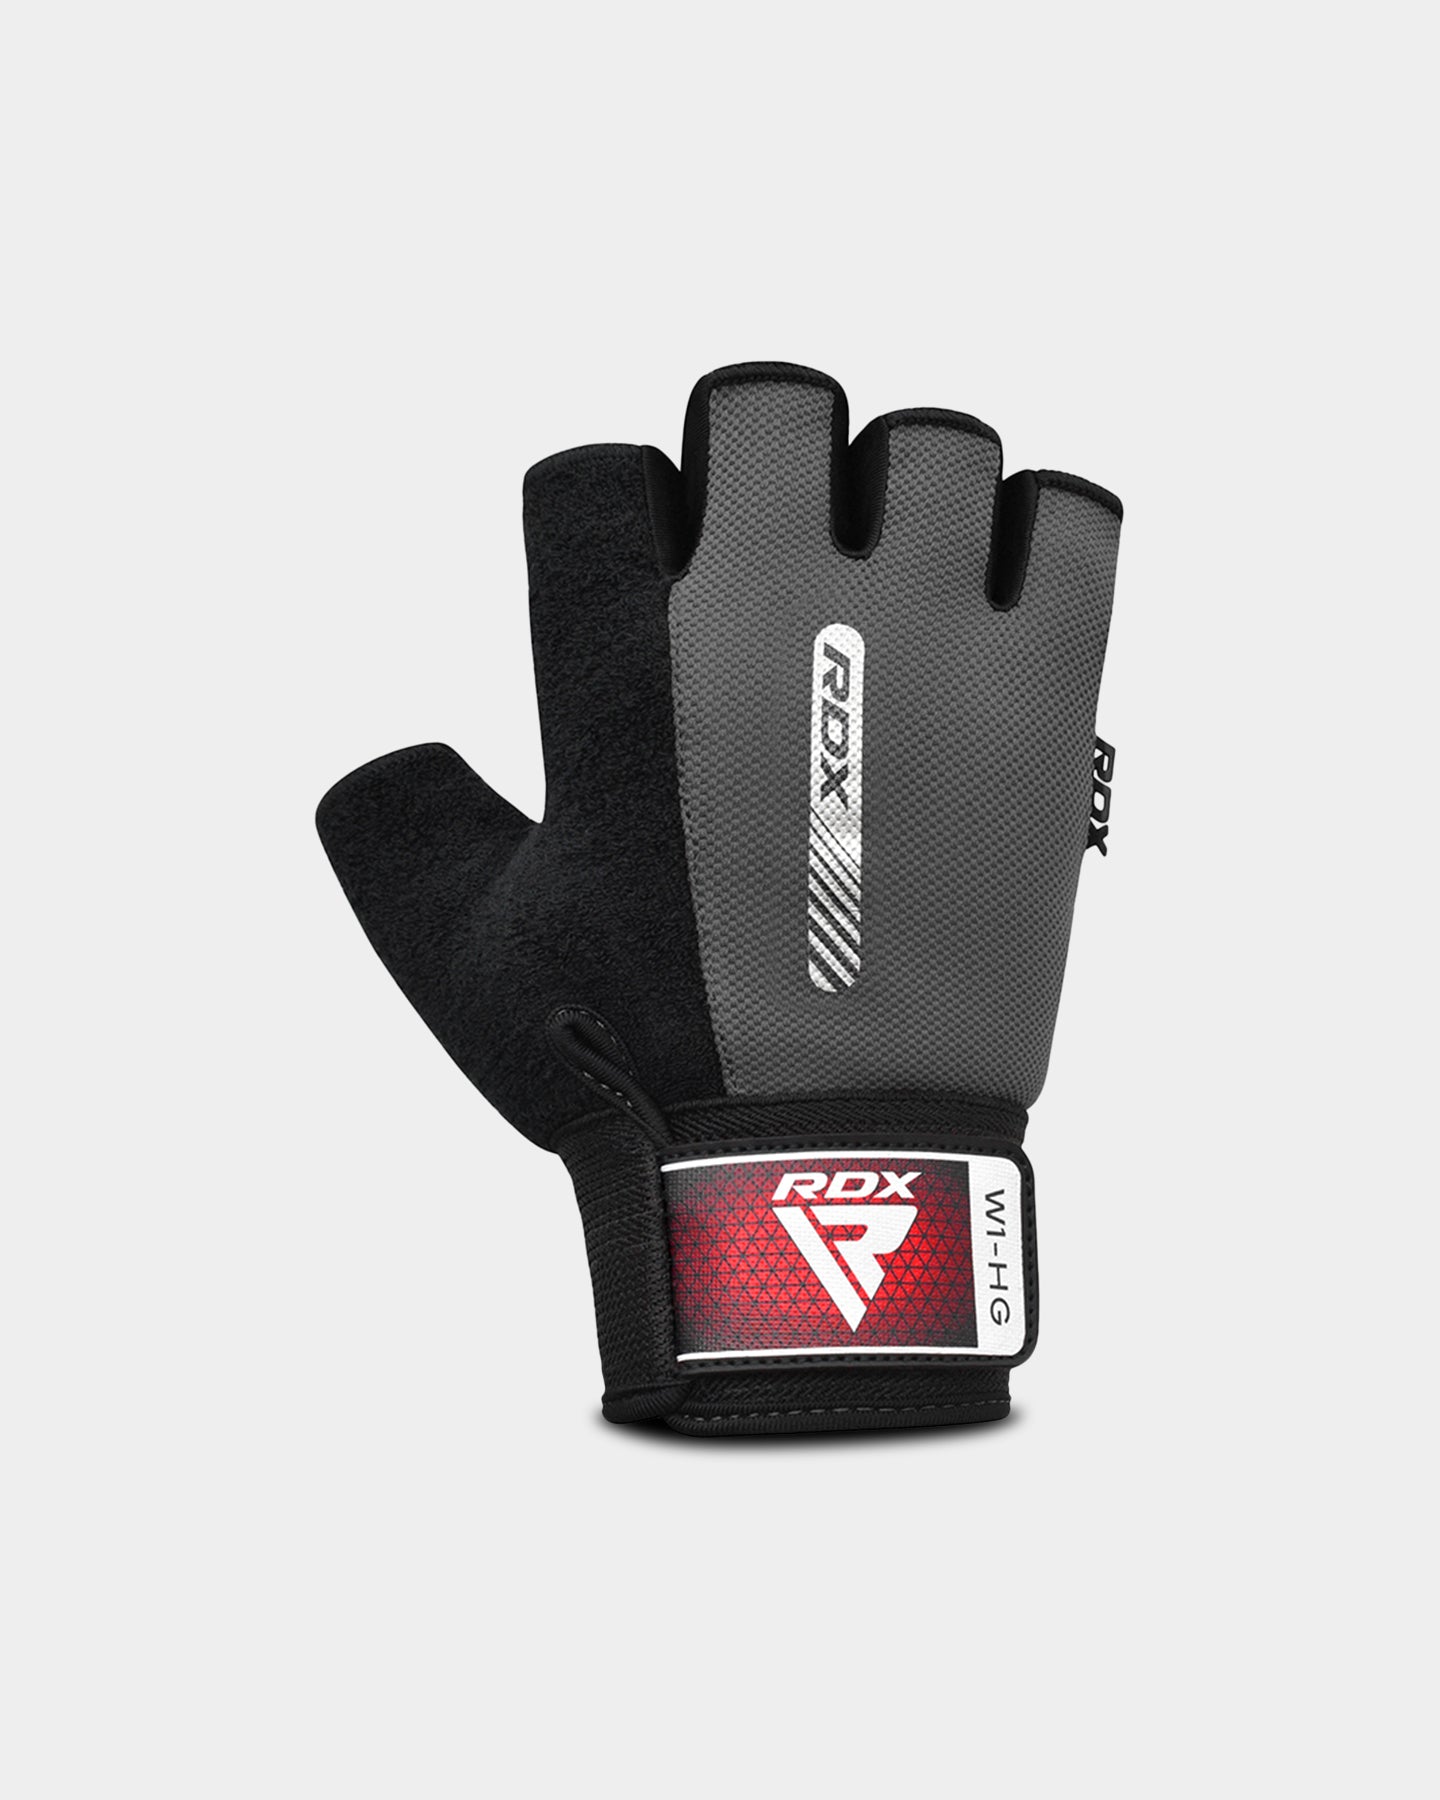 RDX Sports W1 Gym Workout Gloves, S, Gray A2